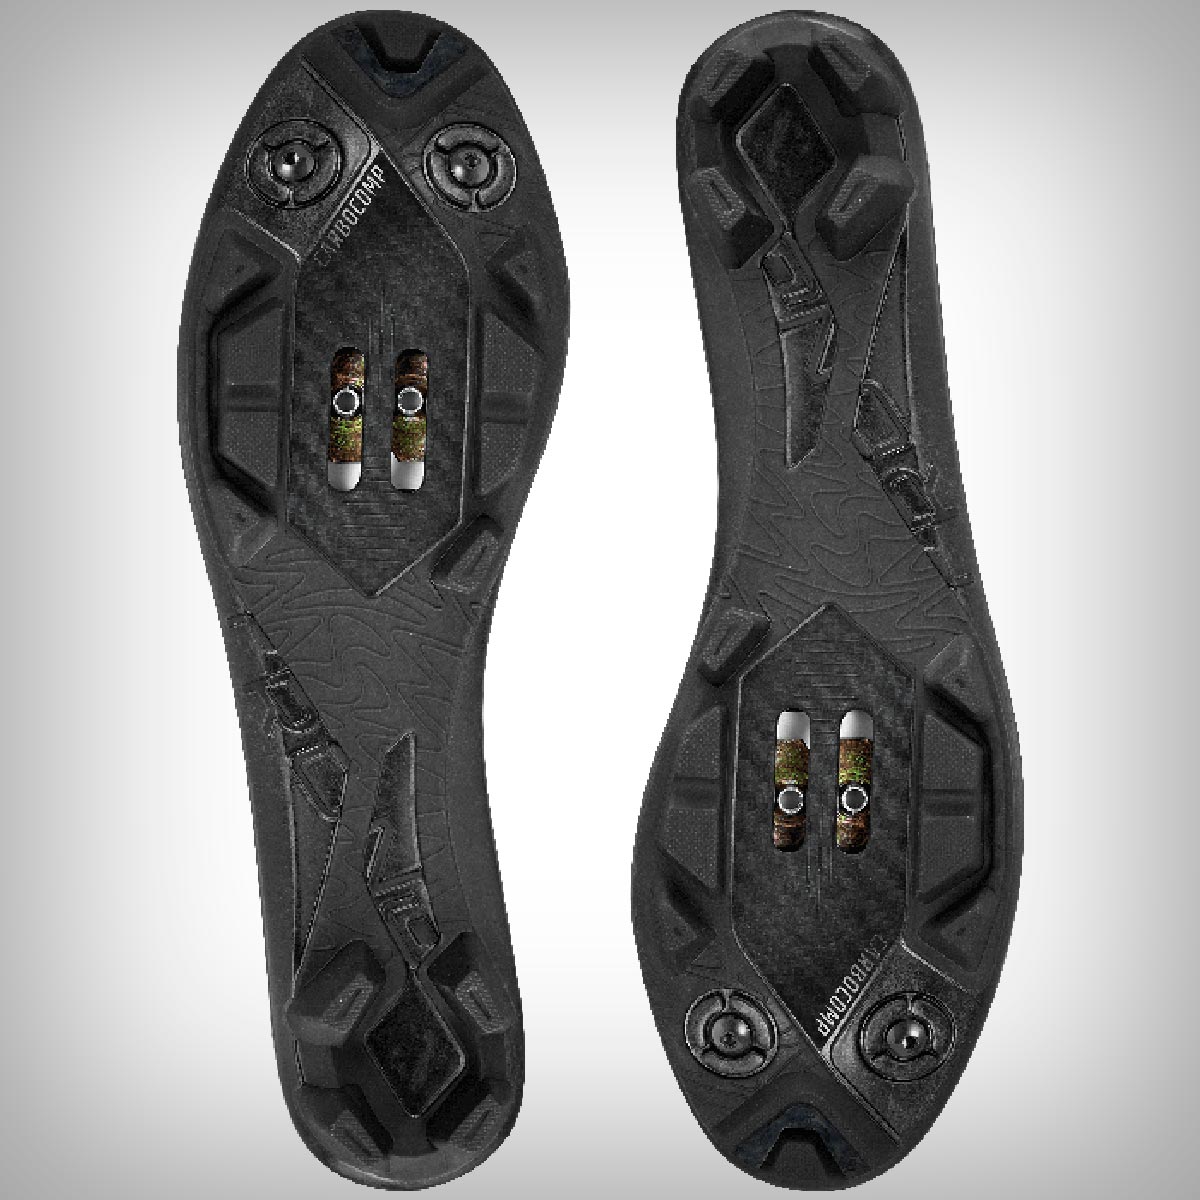 Crono CG1, unas zapatillas de alto rendimiento para MTB y Gravel que apuestan por los clásicos cordones